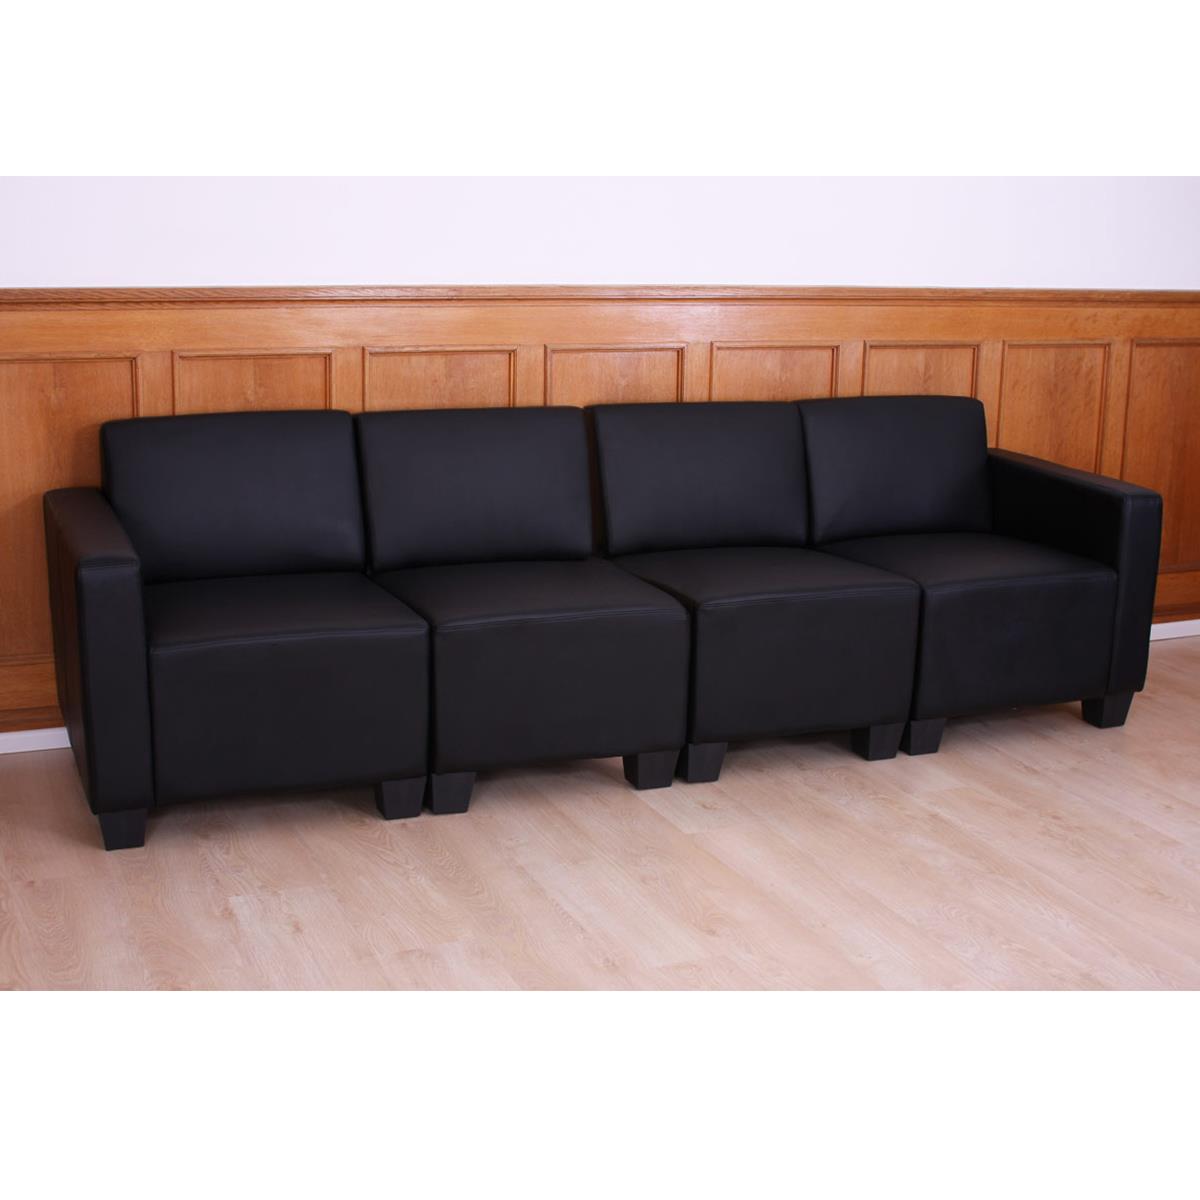 Sofá Modular de 4 plazas LONY, Gran Acolchado, Exclusivo Diseño, en Piel color Negro